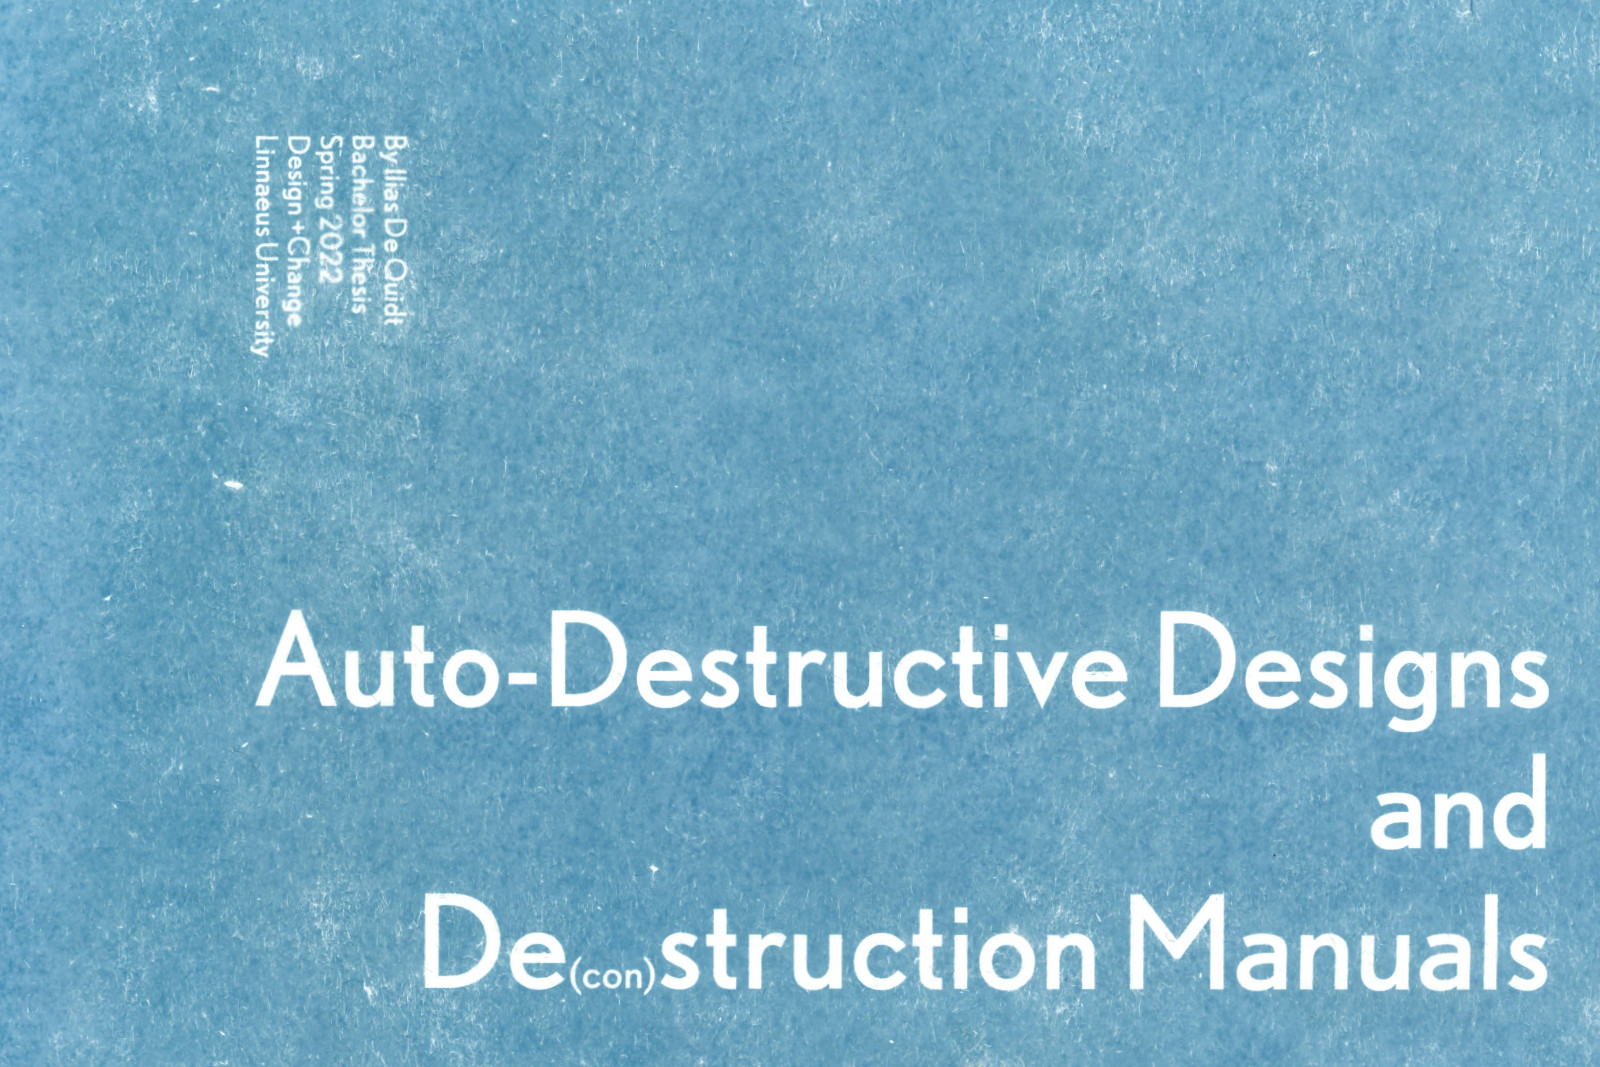 Auto-Destructive Design and De(con)struction manuals by Ilias De Quidt